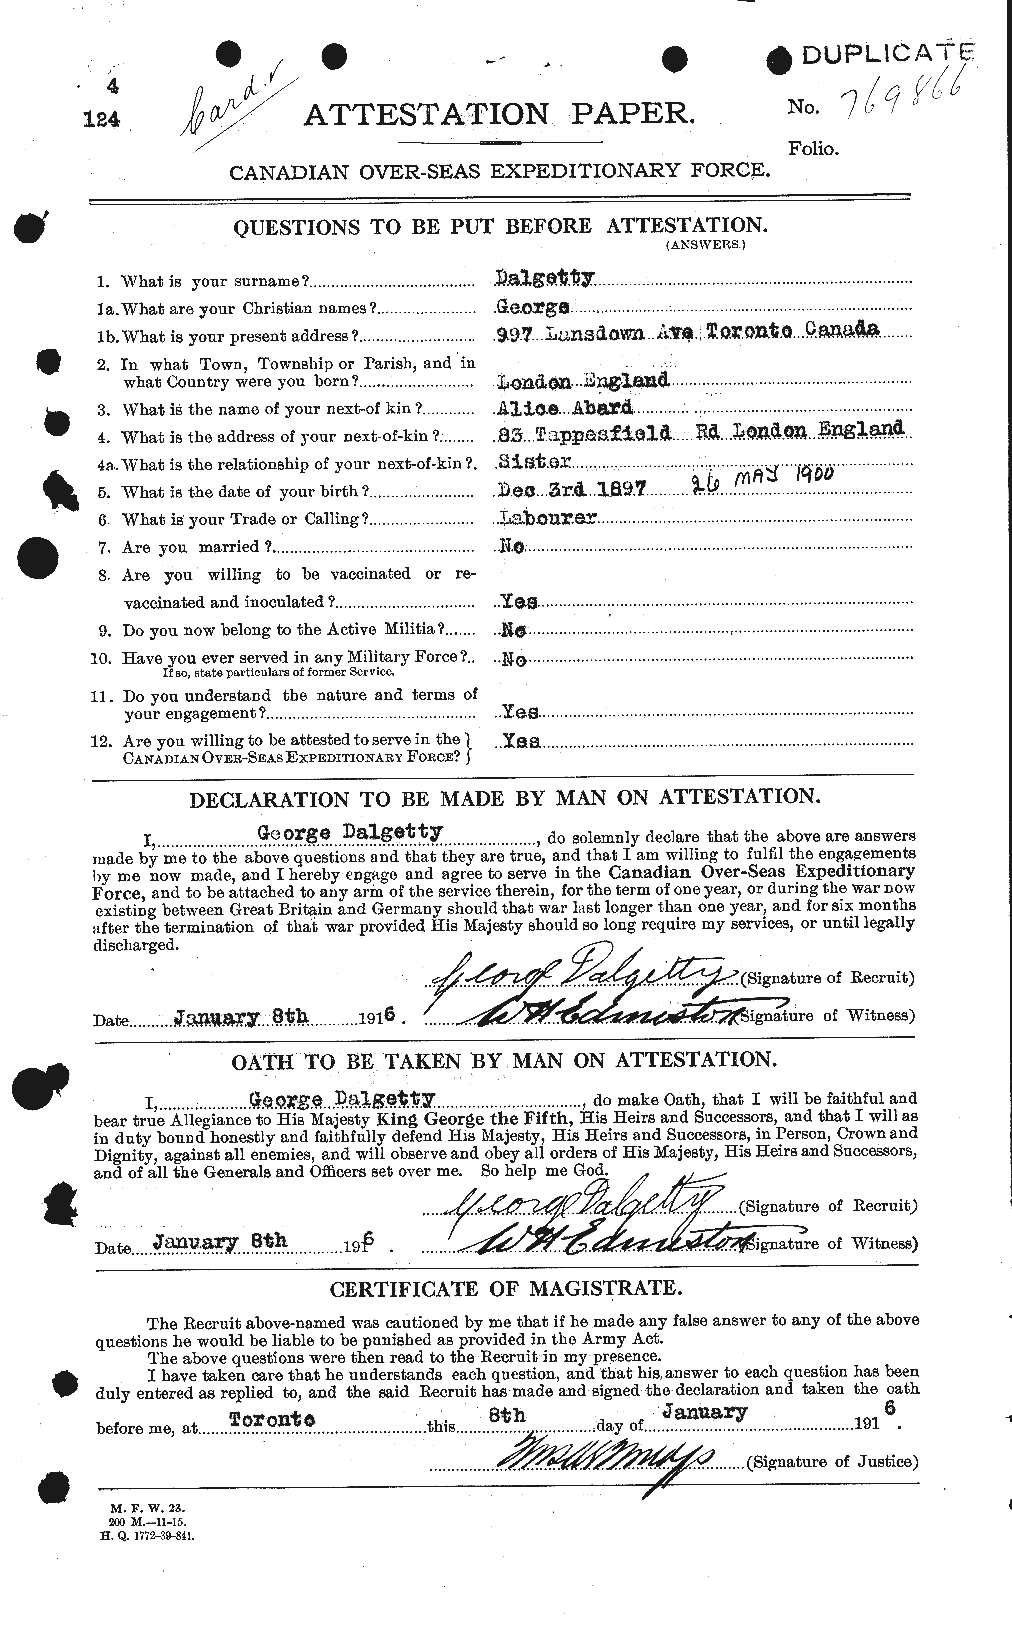 Dossiers du Personnel de la Première Guerre mondiale - CEC 280537a